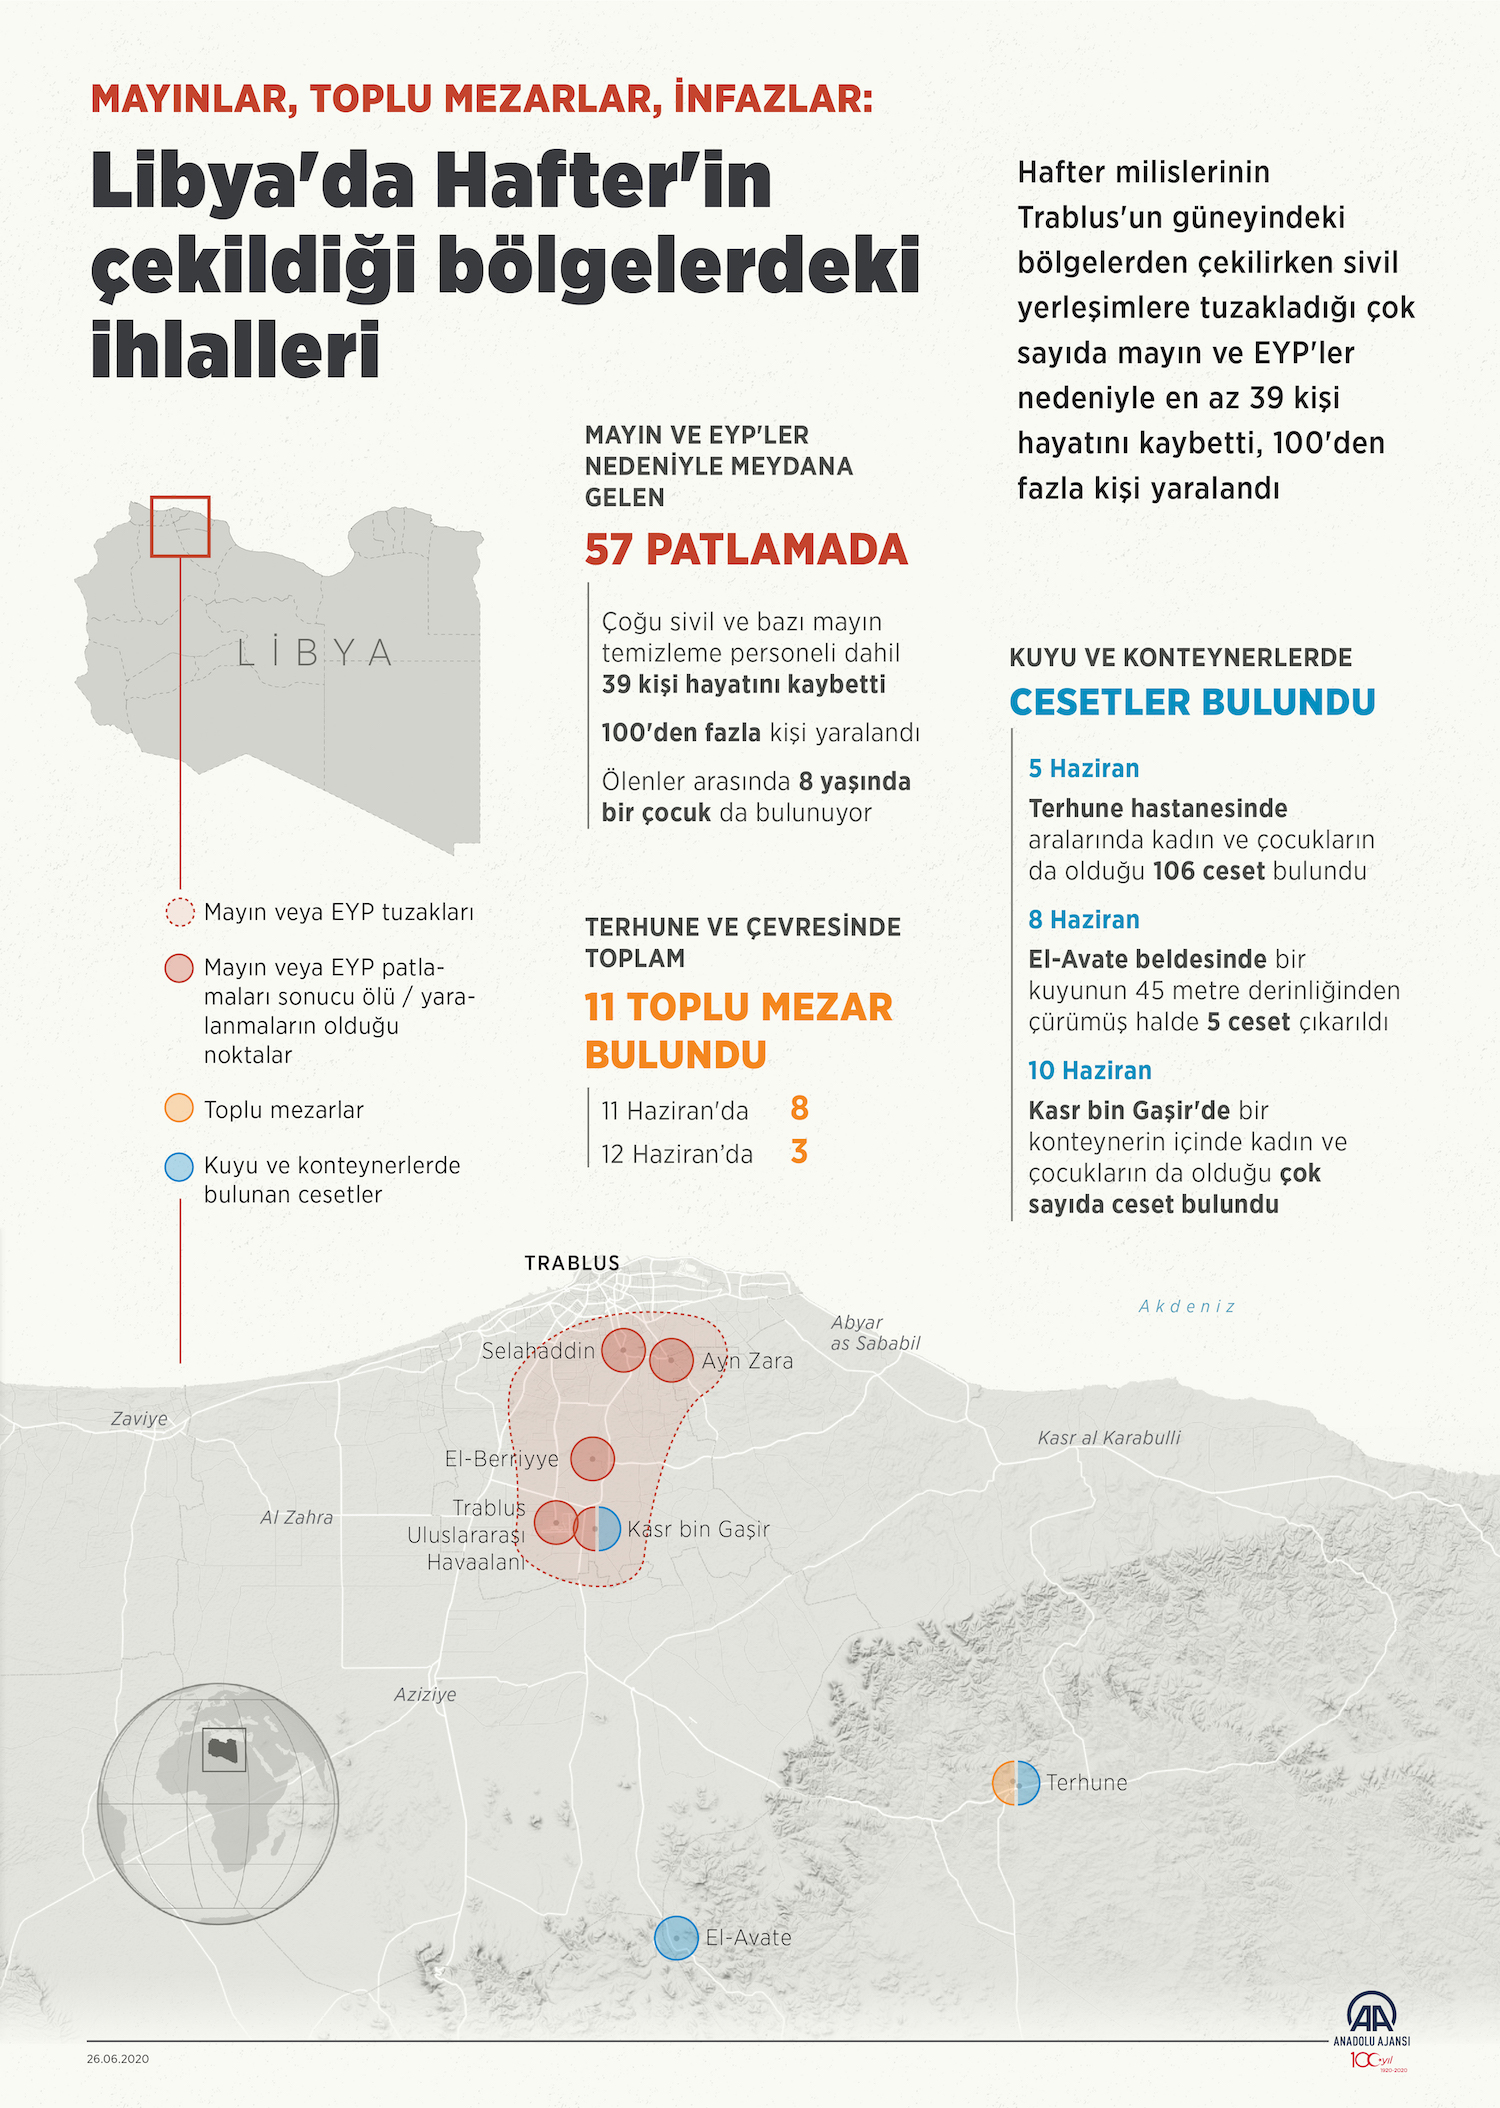 Libya'da Hafter'in Çekildiği Bölgedeki İhlaller